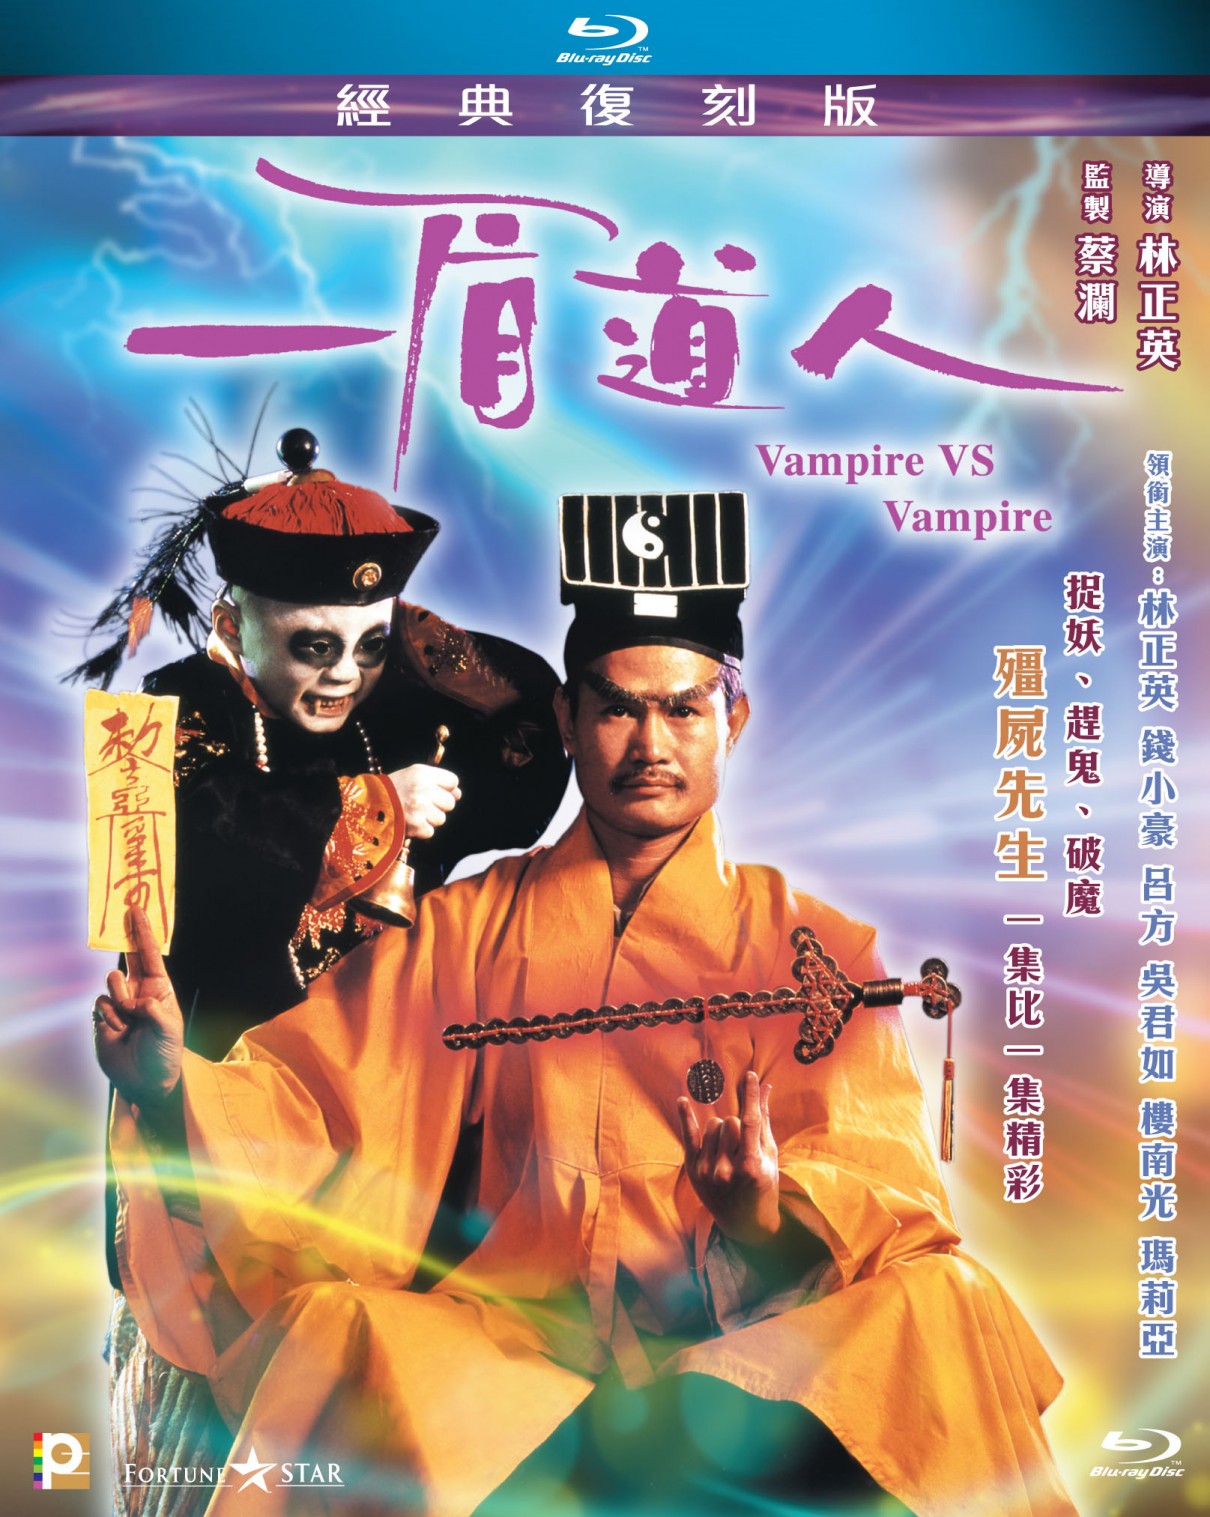 一眉道人[港版原盘 典范复刻版 国粤双语 简繁英字幕]Vampire Vs Vampire 1989 HKG Blu-ray 1080P AVC TrueHD 5.1- 22.96G-1.jpg